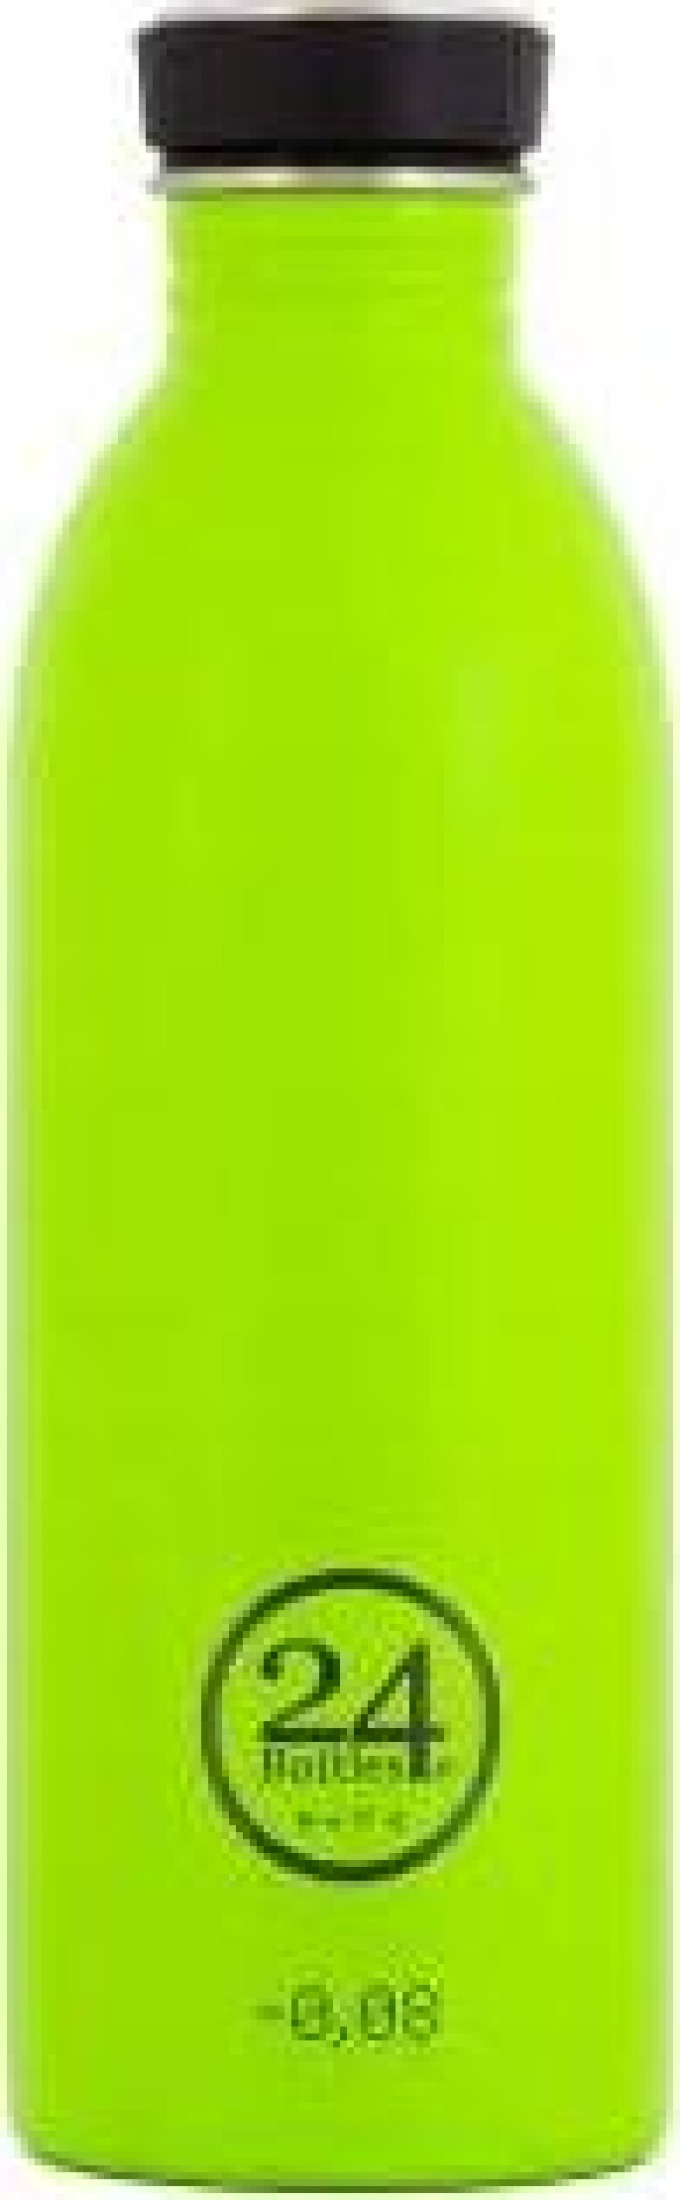 Nerezová láhev Urban Bottle Lime Green 500ml 24 Bottles